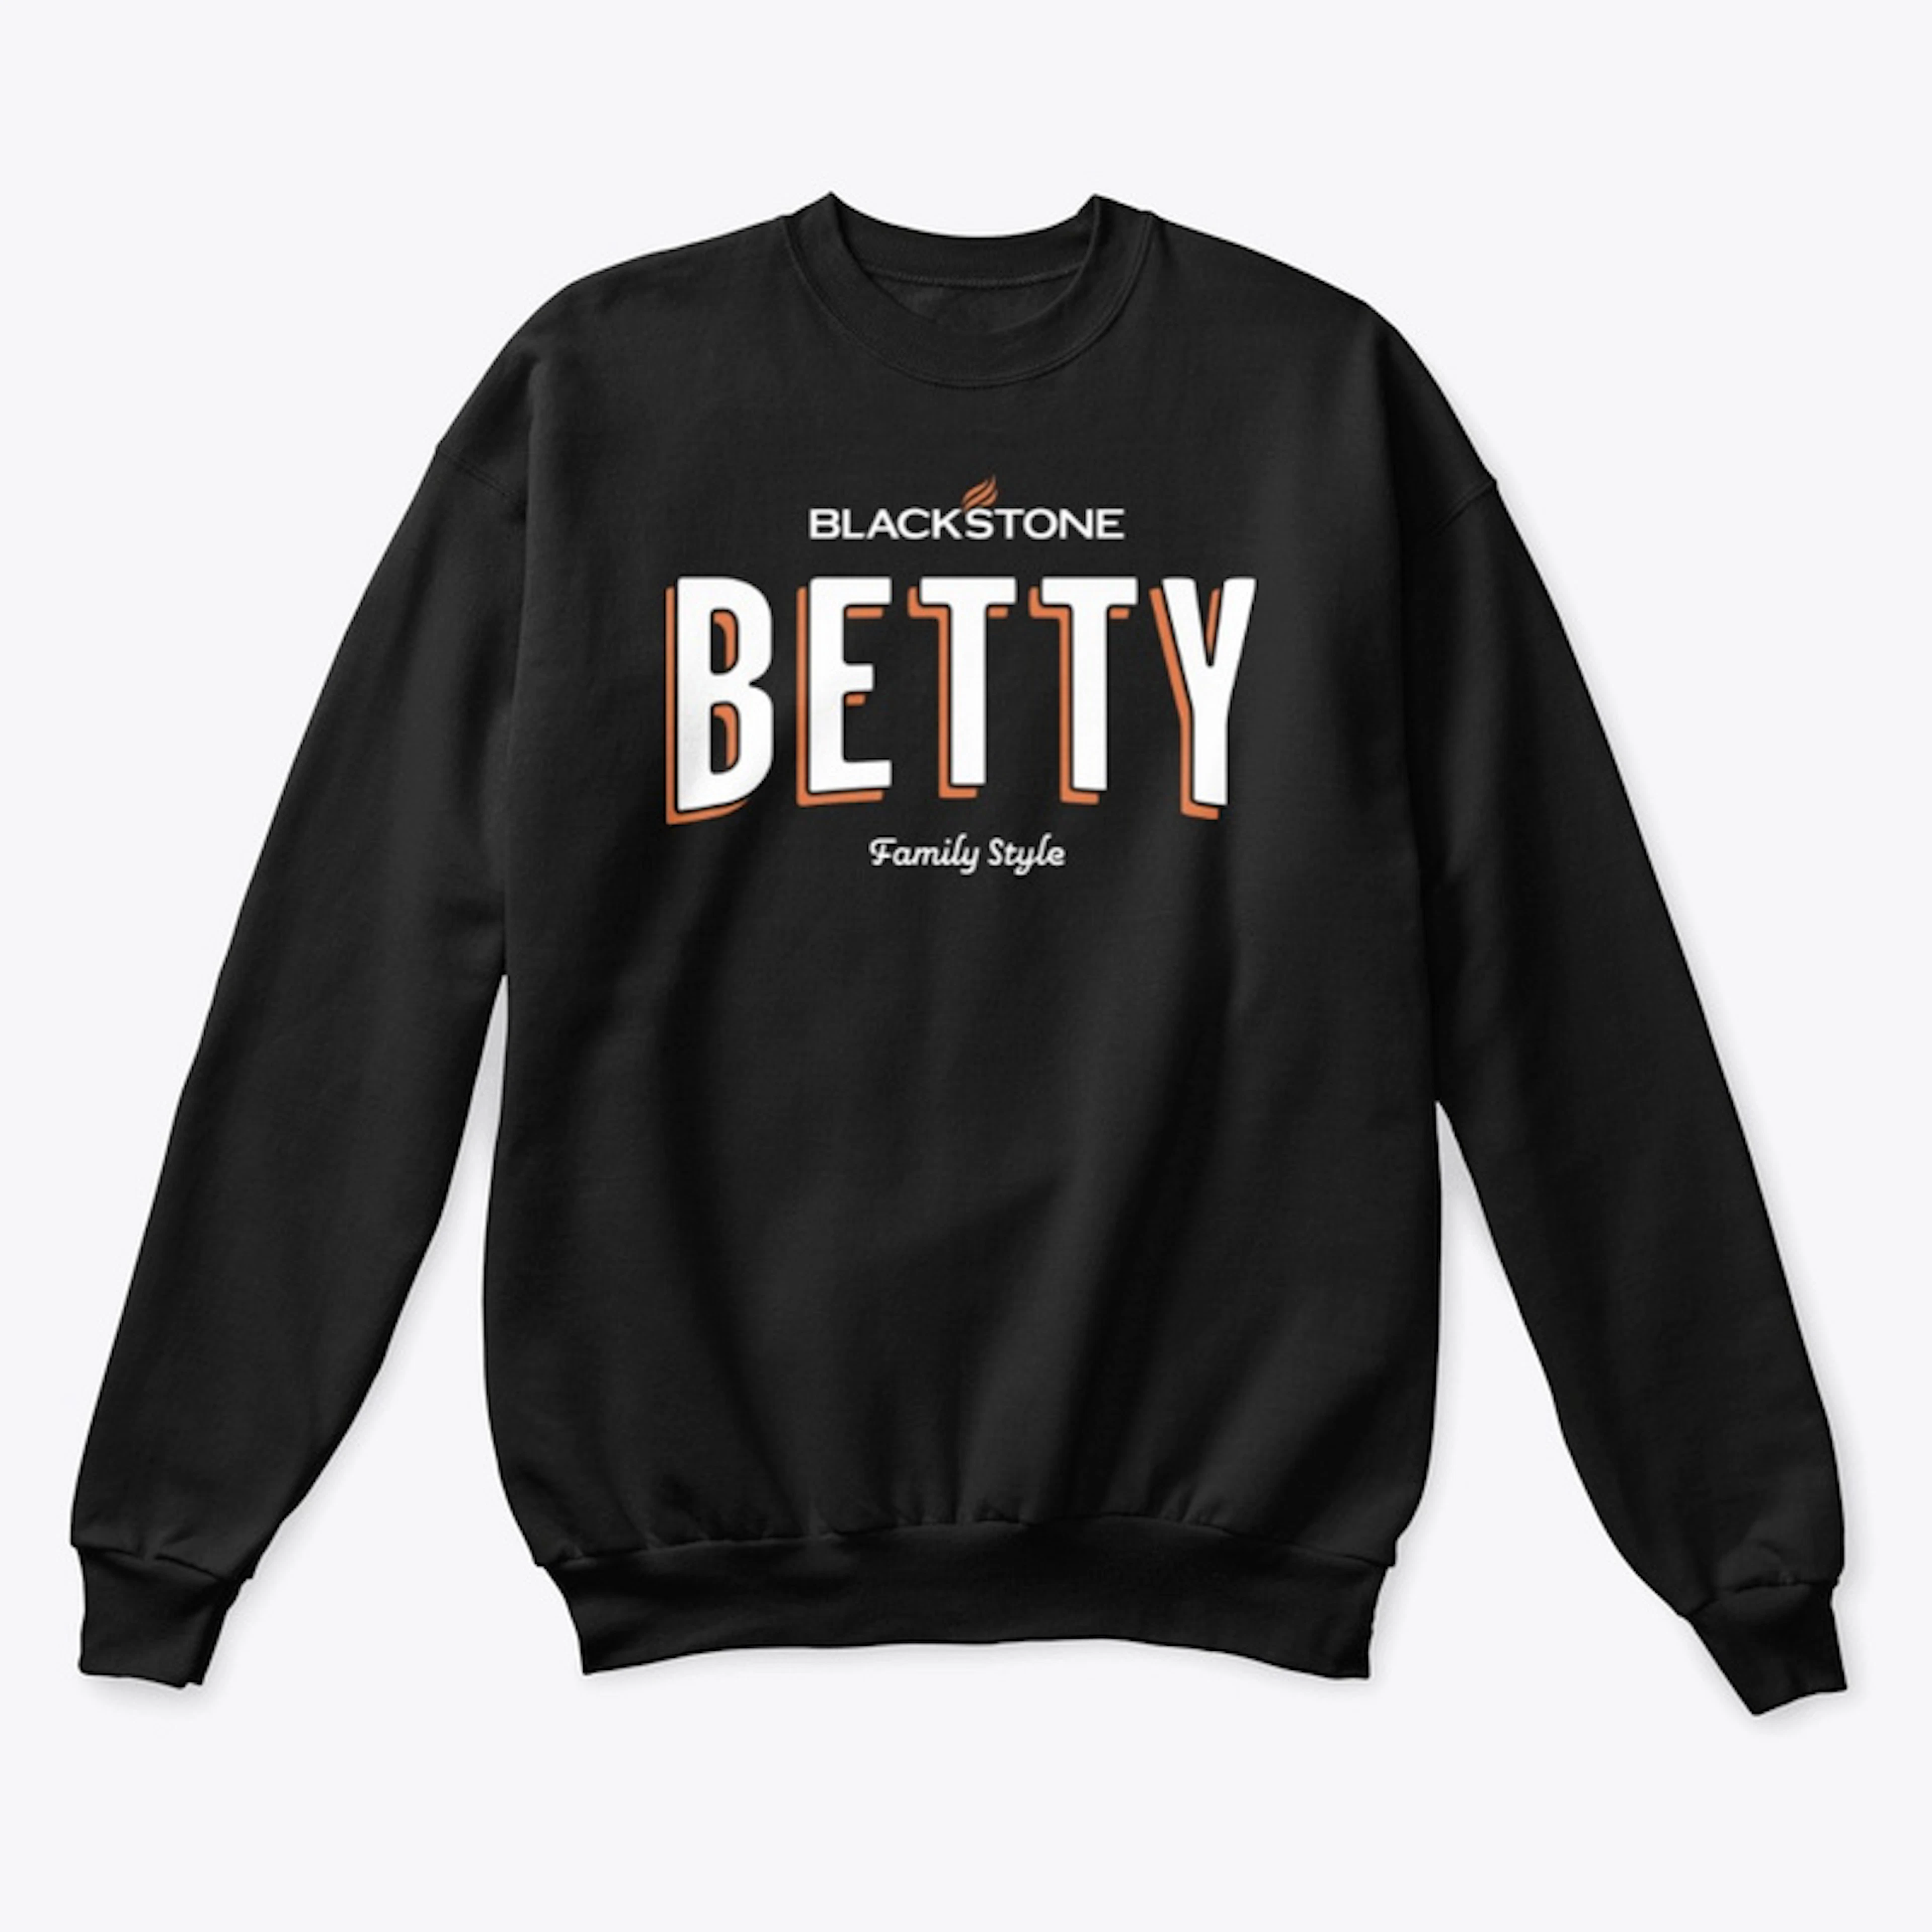 Blackstone Betty - Family Style